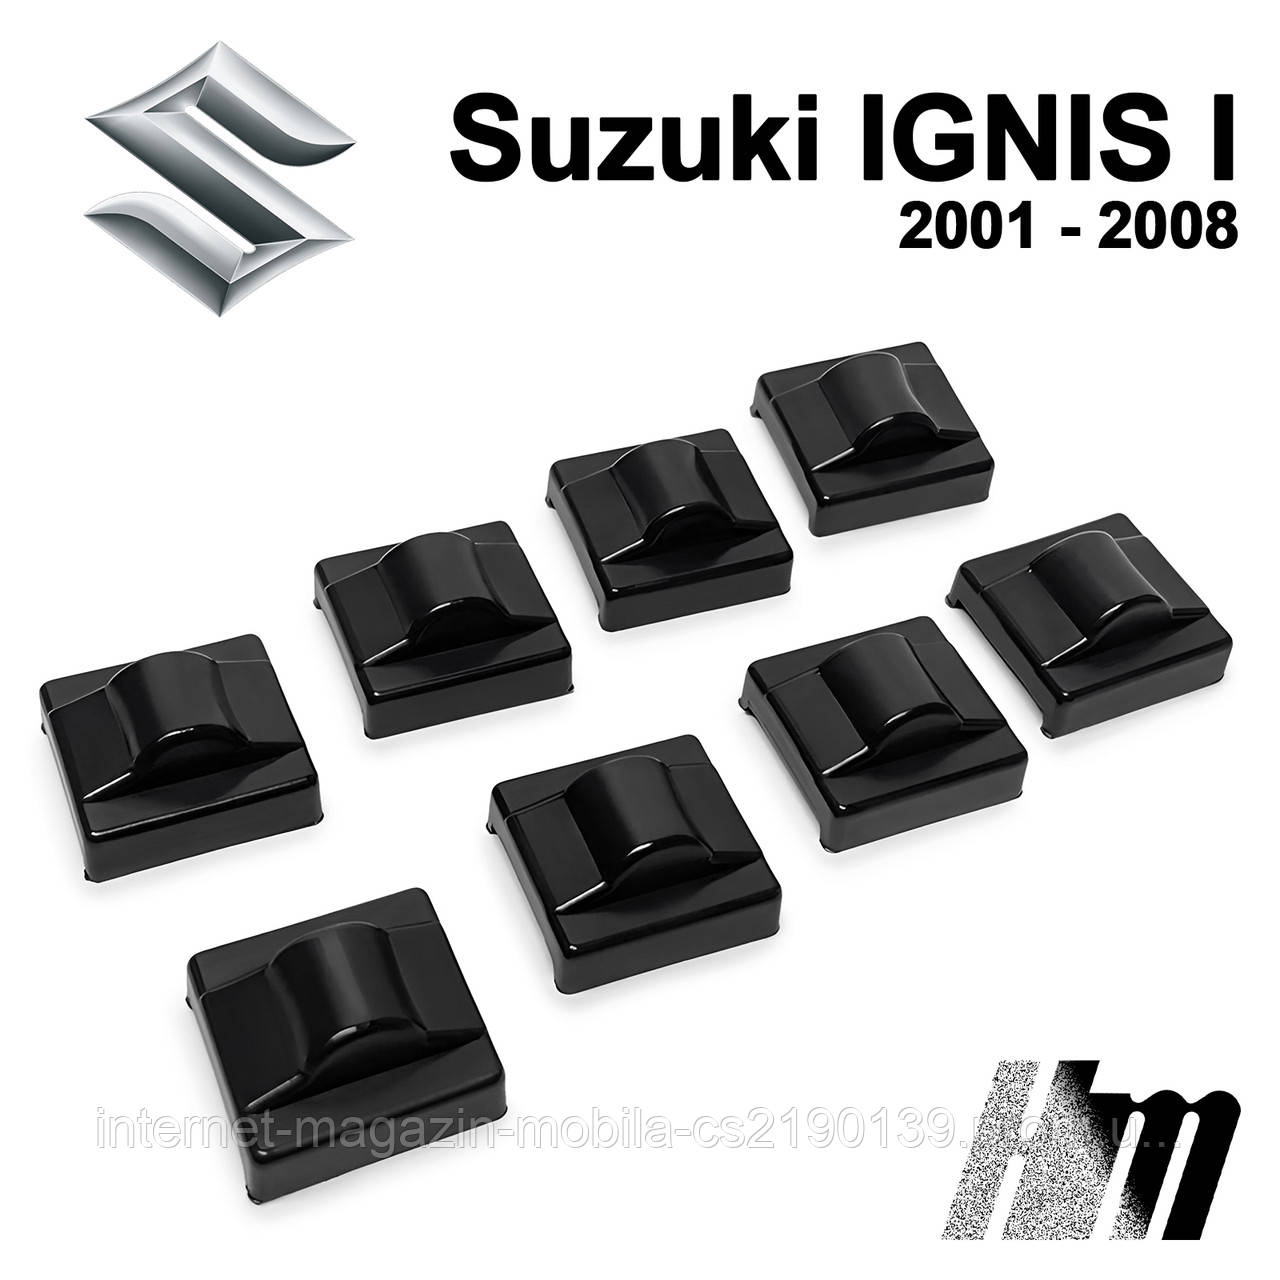 Ремкомплект обмежувача дверей Suzuki IGNIS (I) 2001 — 2008, фіксатори, вкладки, втулки, сухарі